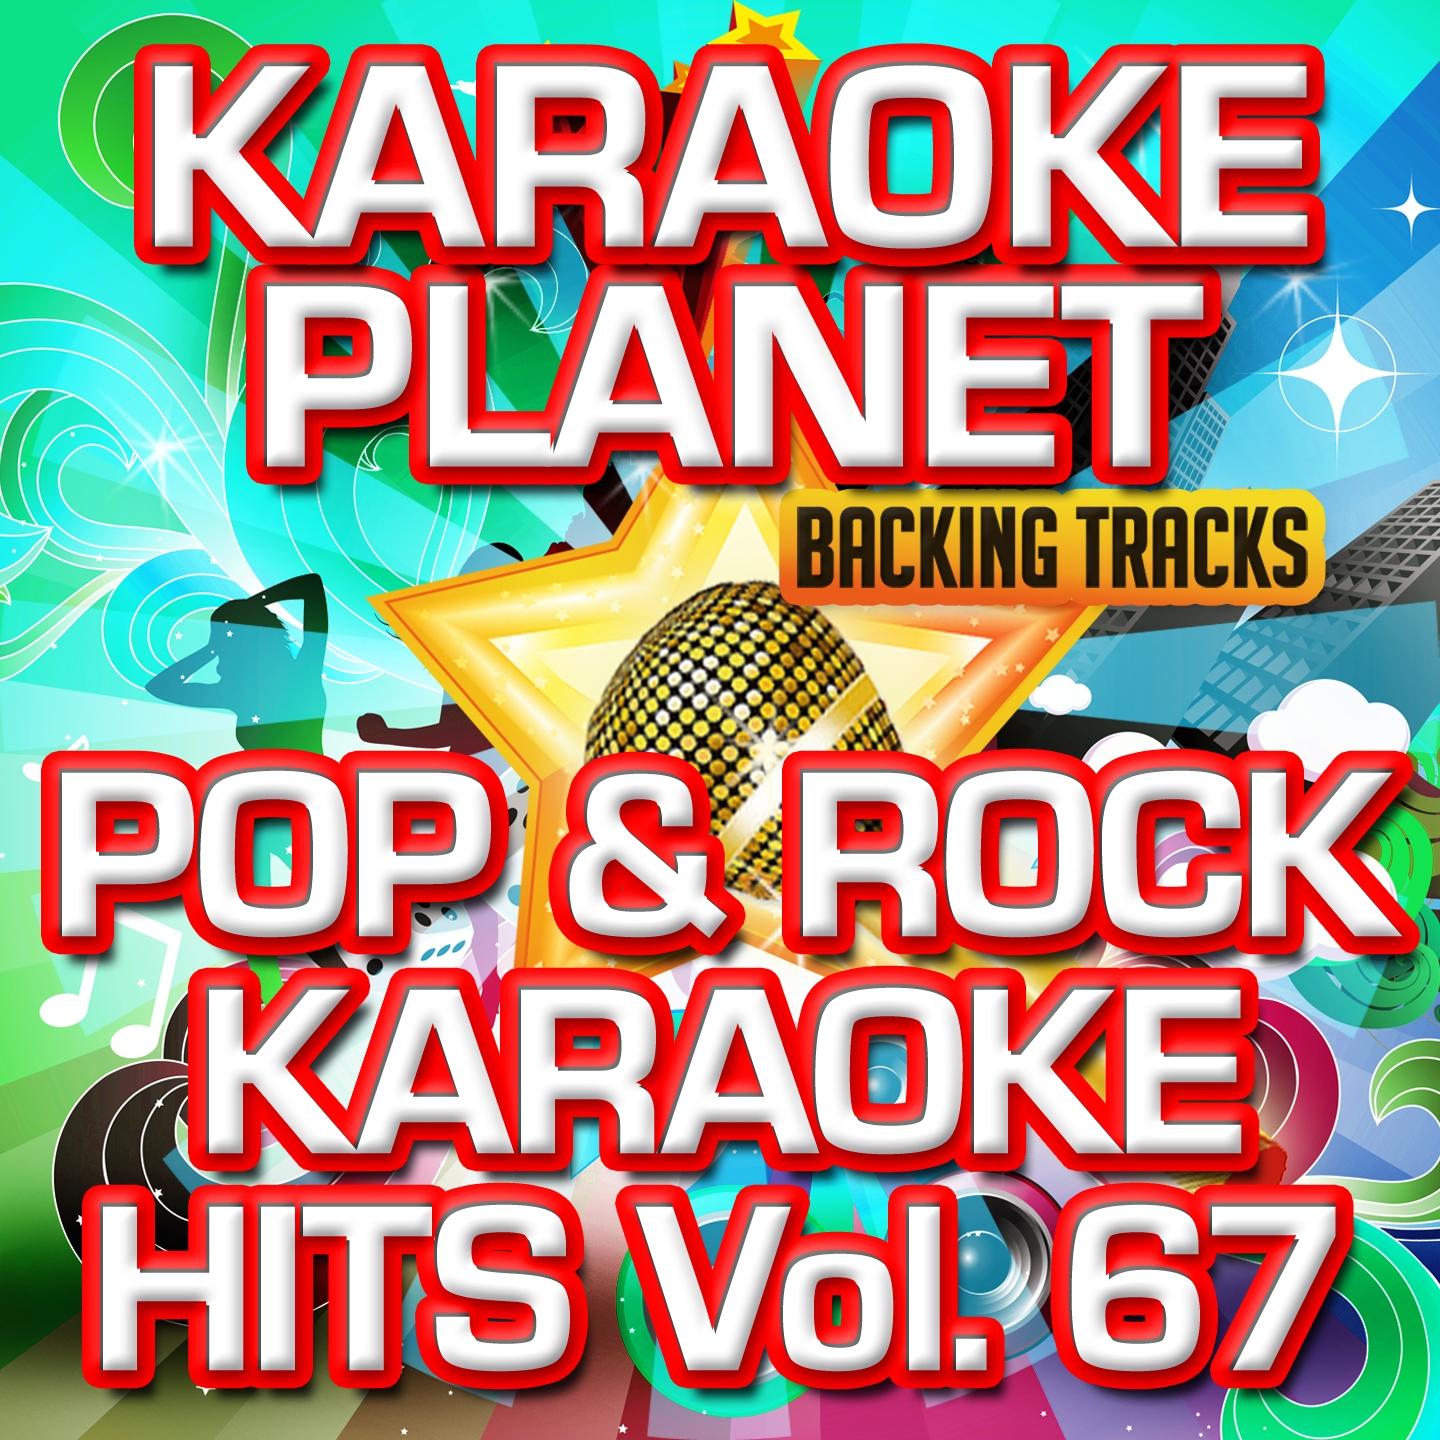 Pop & Rock Karaoke Hits, Vol. 67